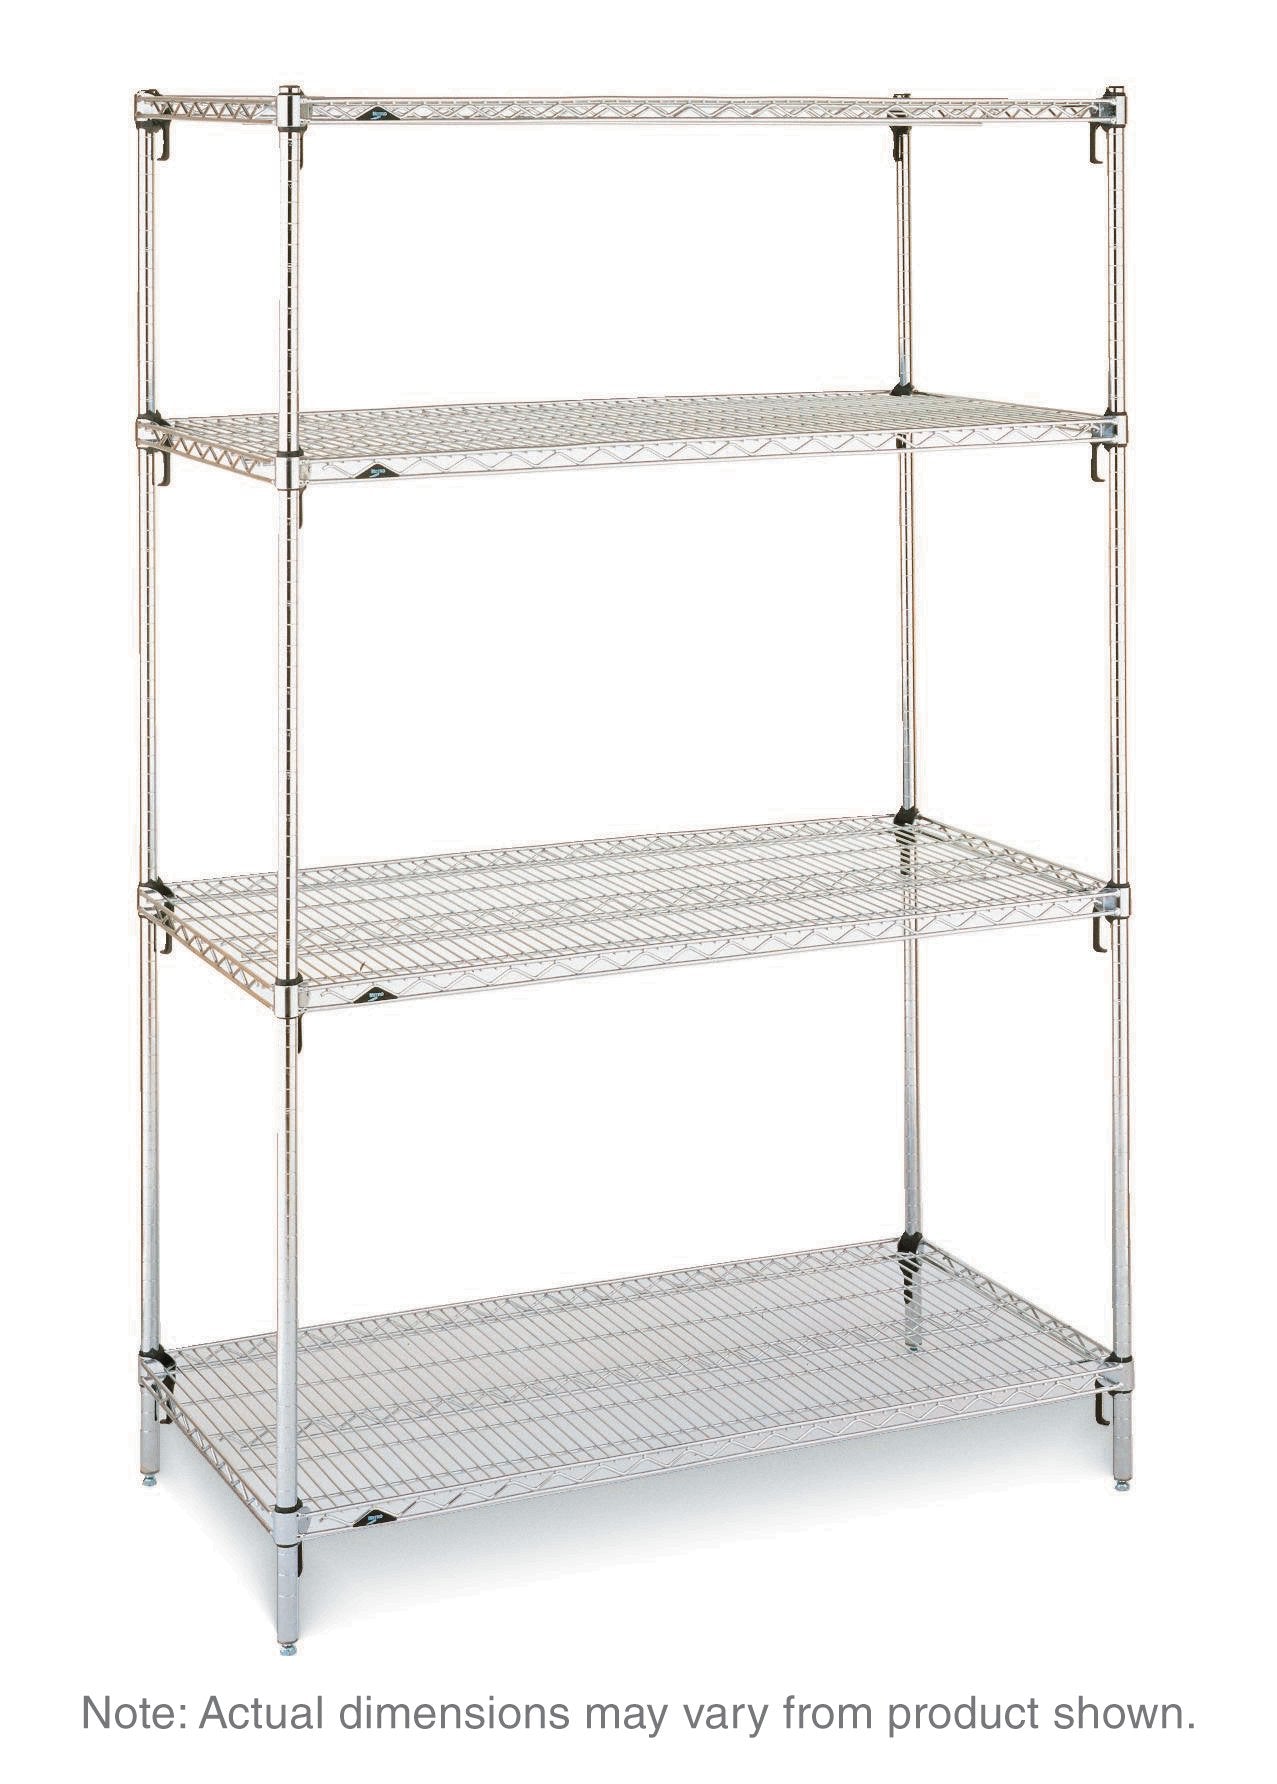 Super Adjustable Stationary Shelving Unit - 4 Shelves